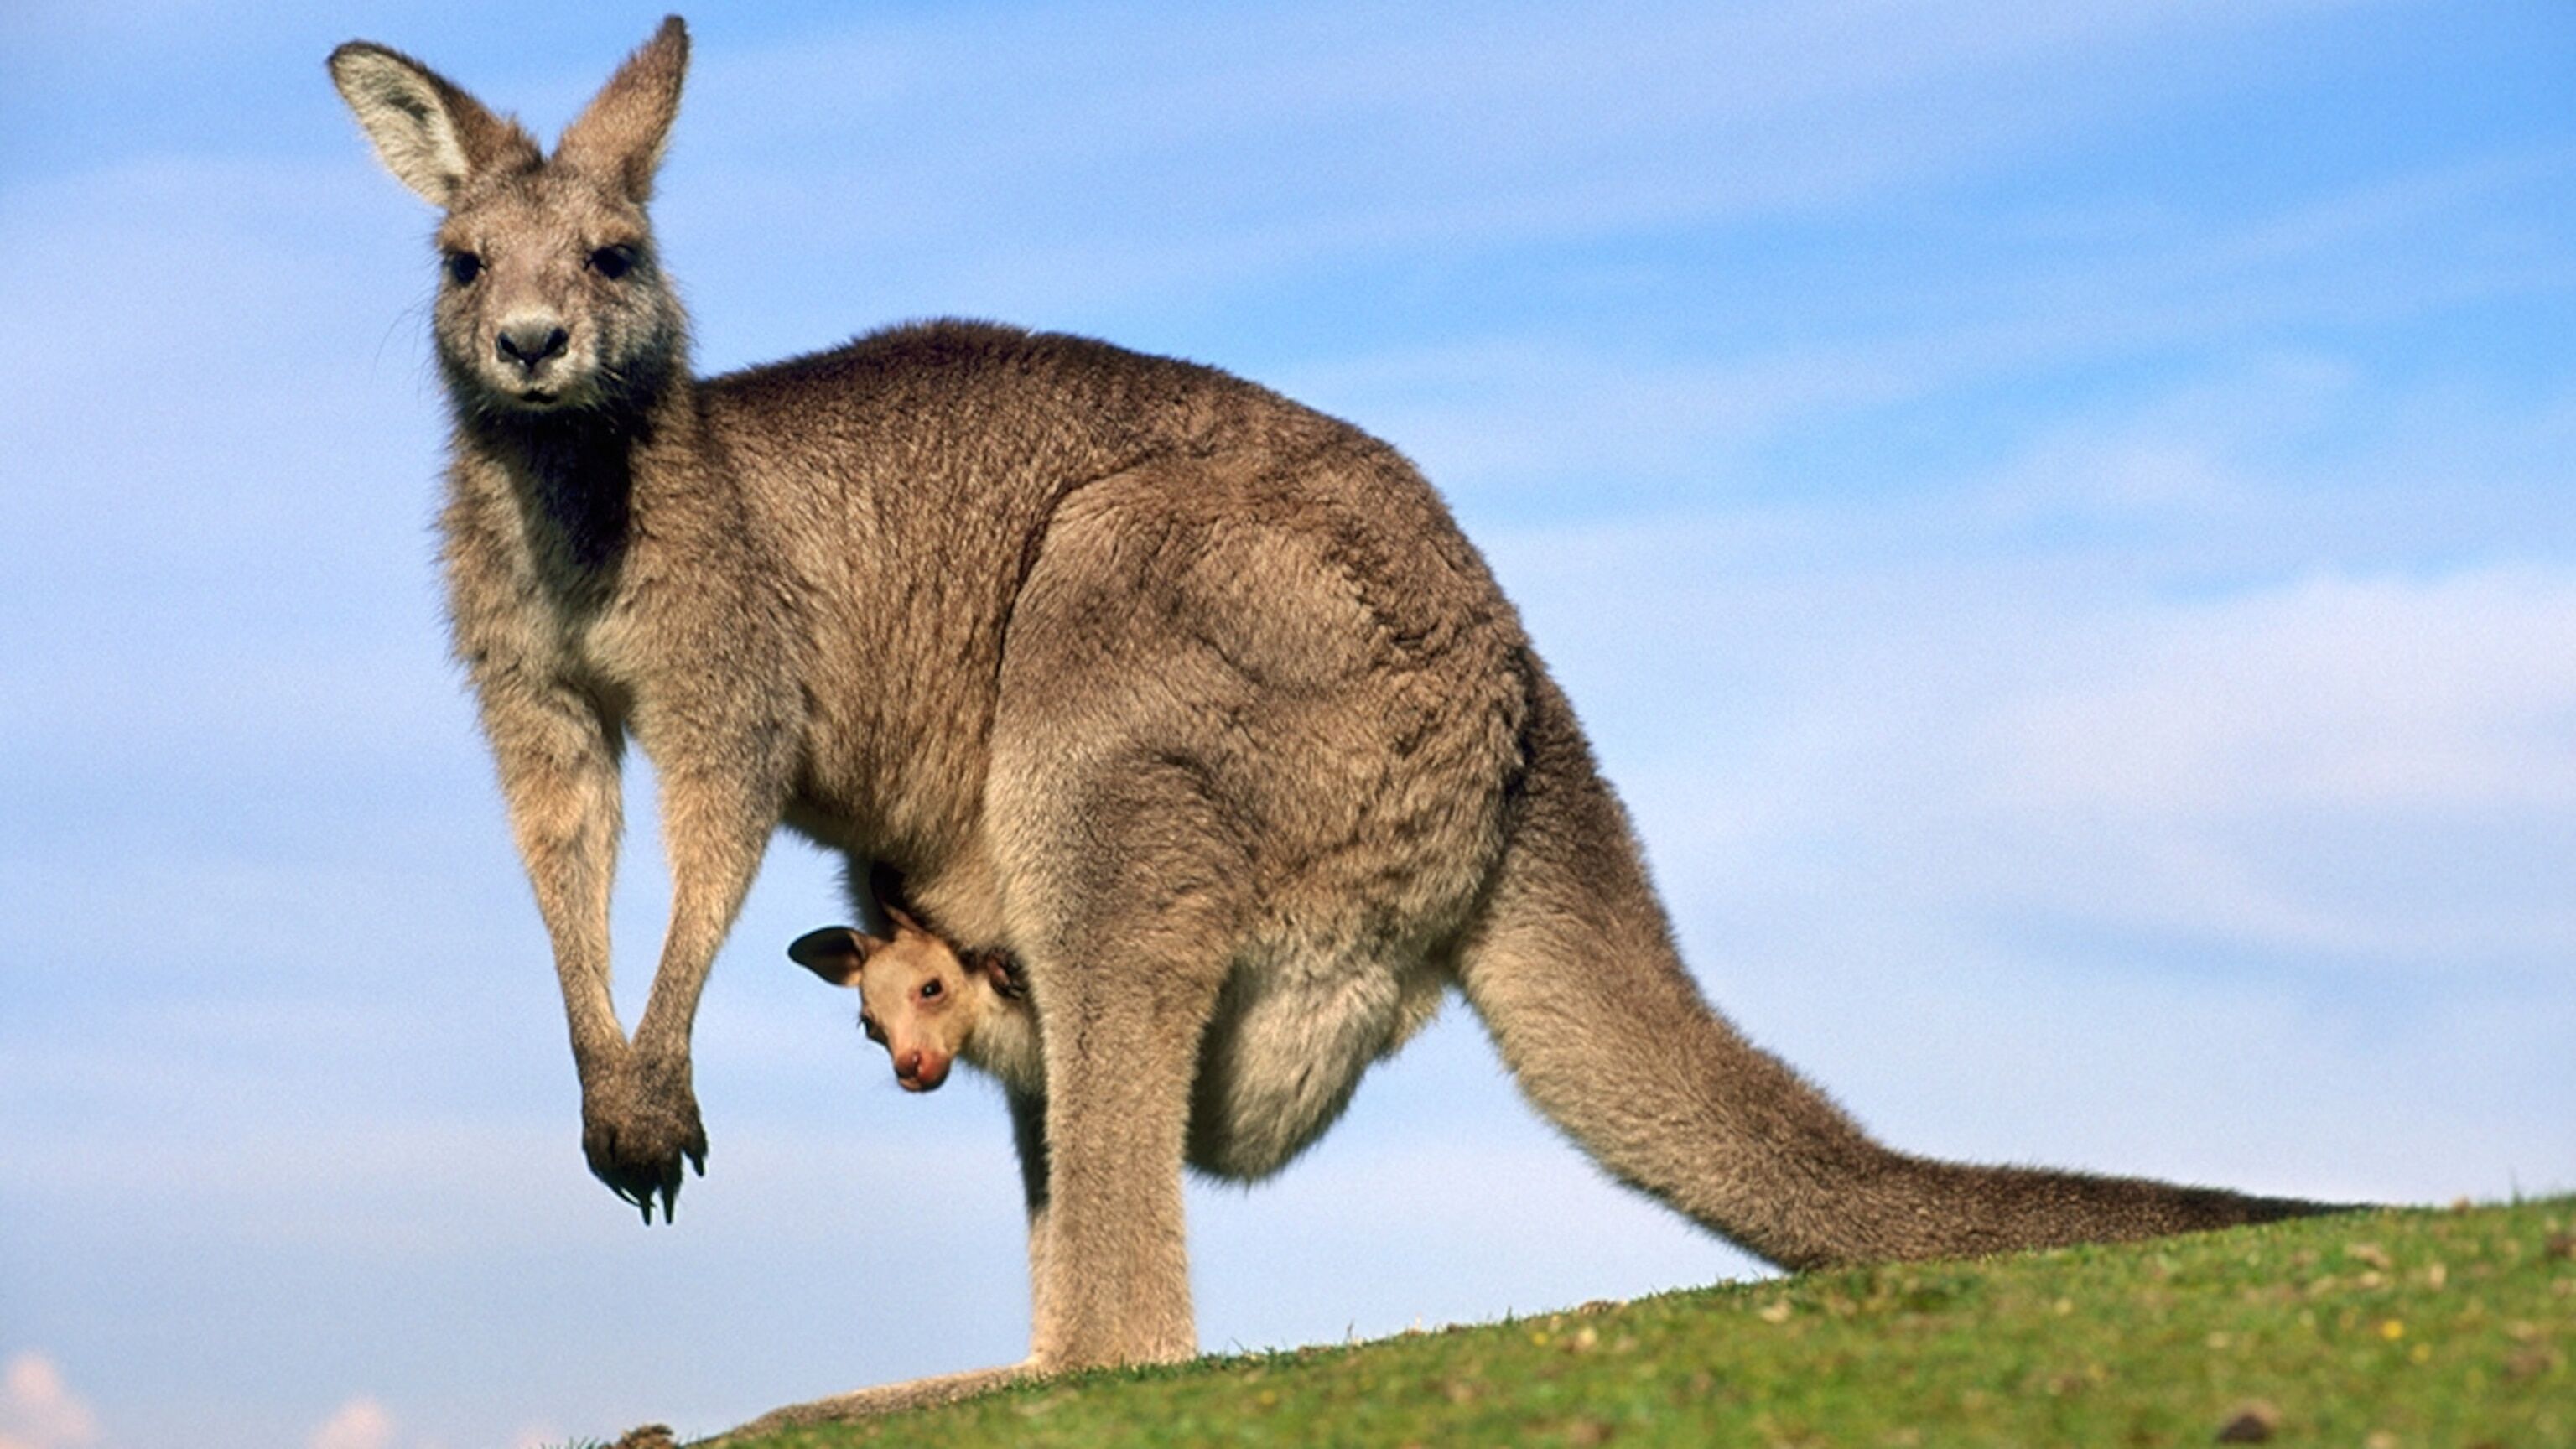 Taming.io - NEW Kangaroo Pet Update & 3 News Potions Showcase